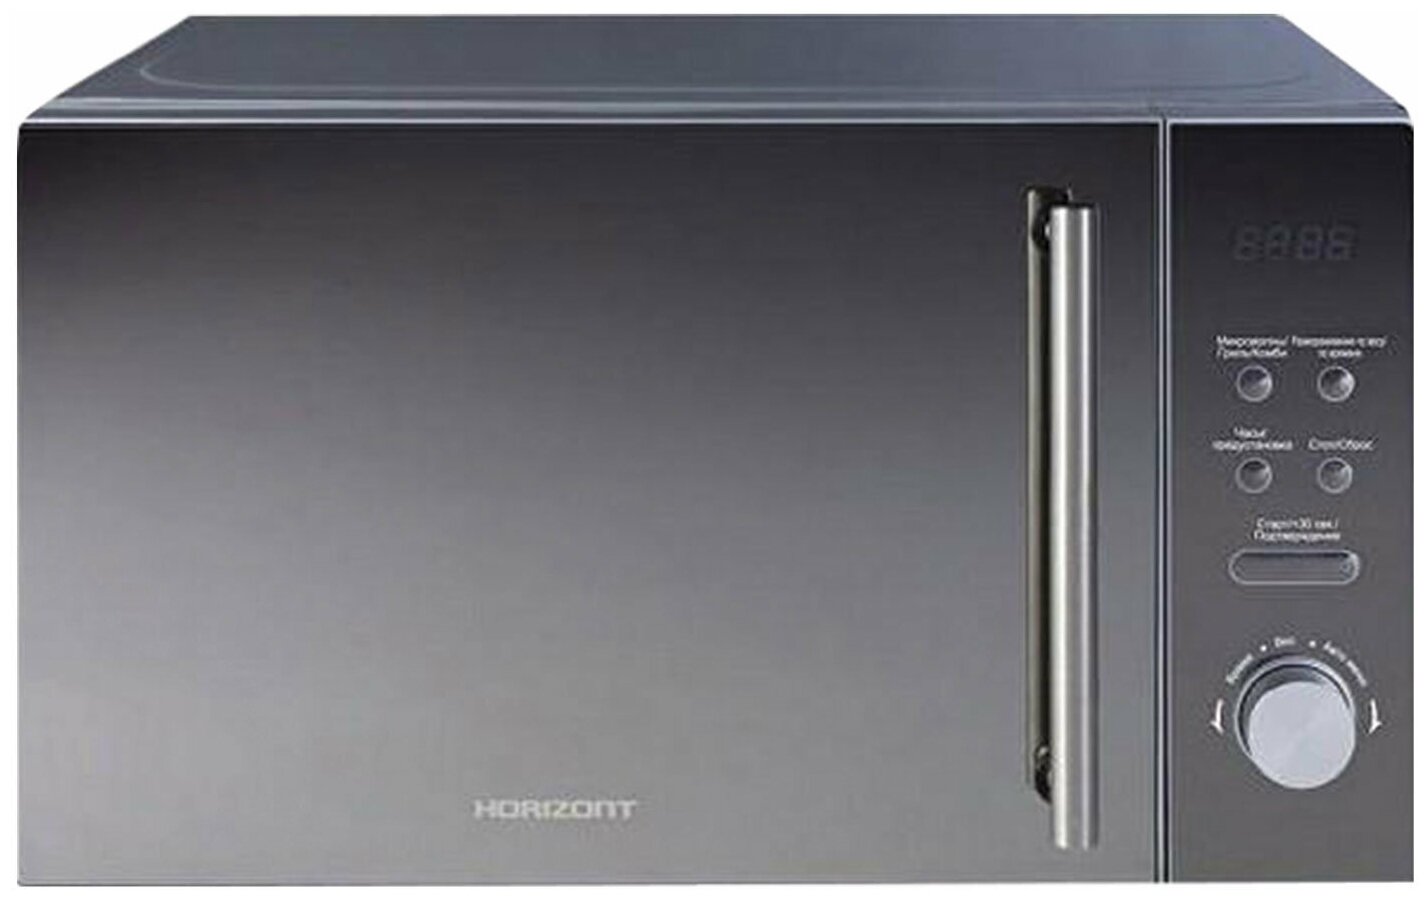 Микроволновая печь HORIZONT 20MW700-1479BKB, объем 20 л, мощность 700 Вт, электронное управление, гриль, черная